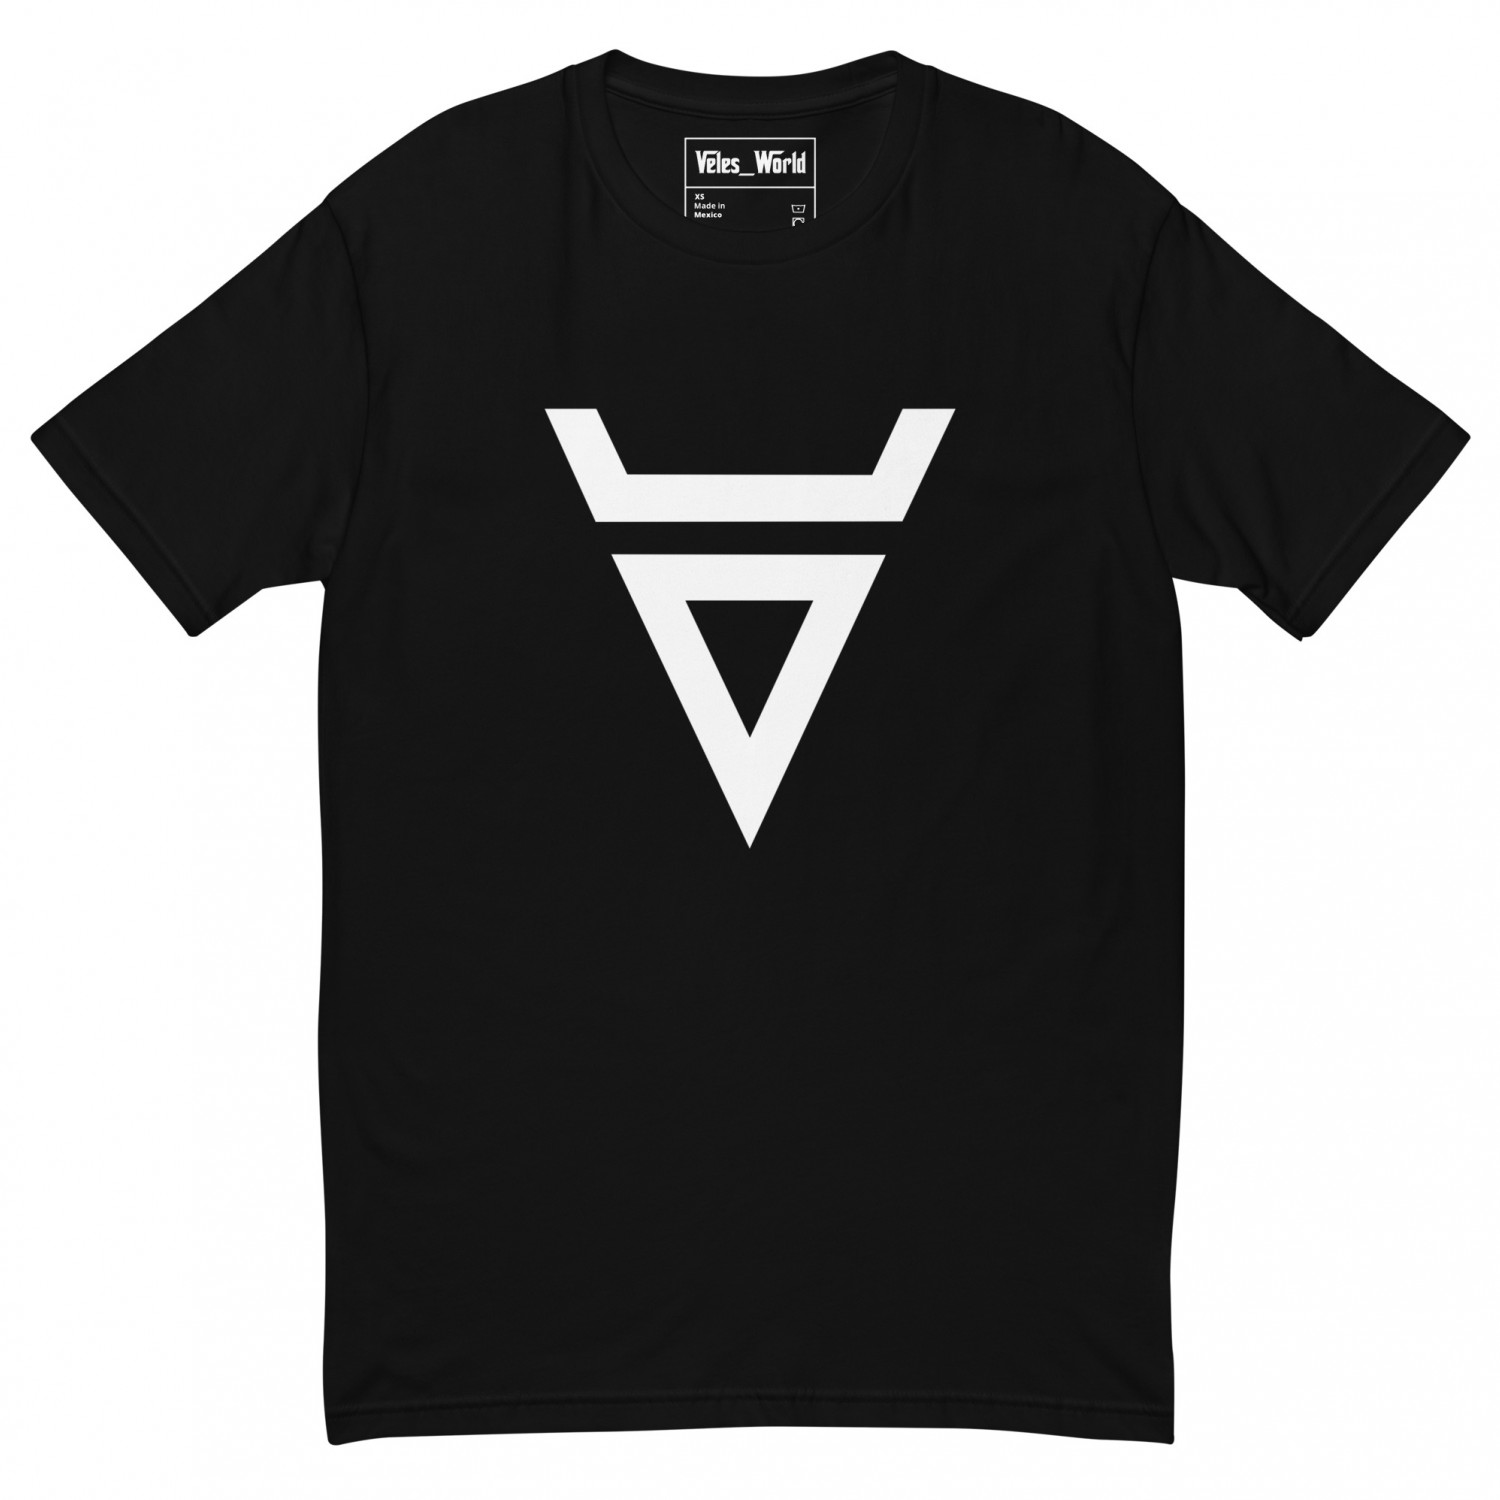 Buy T-shirt "Veles"